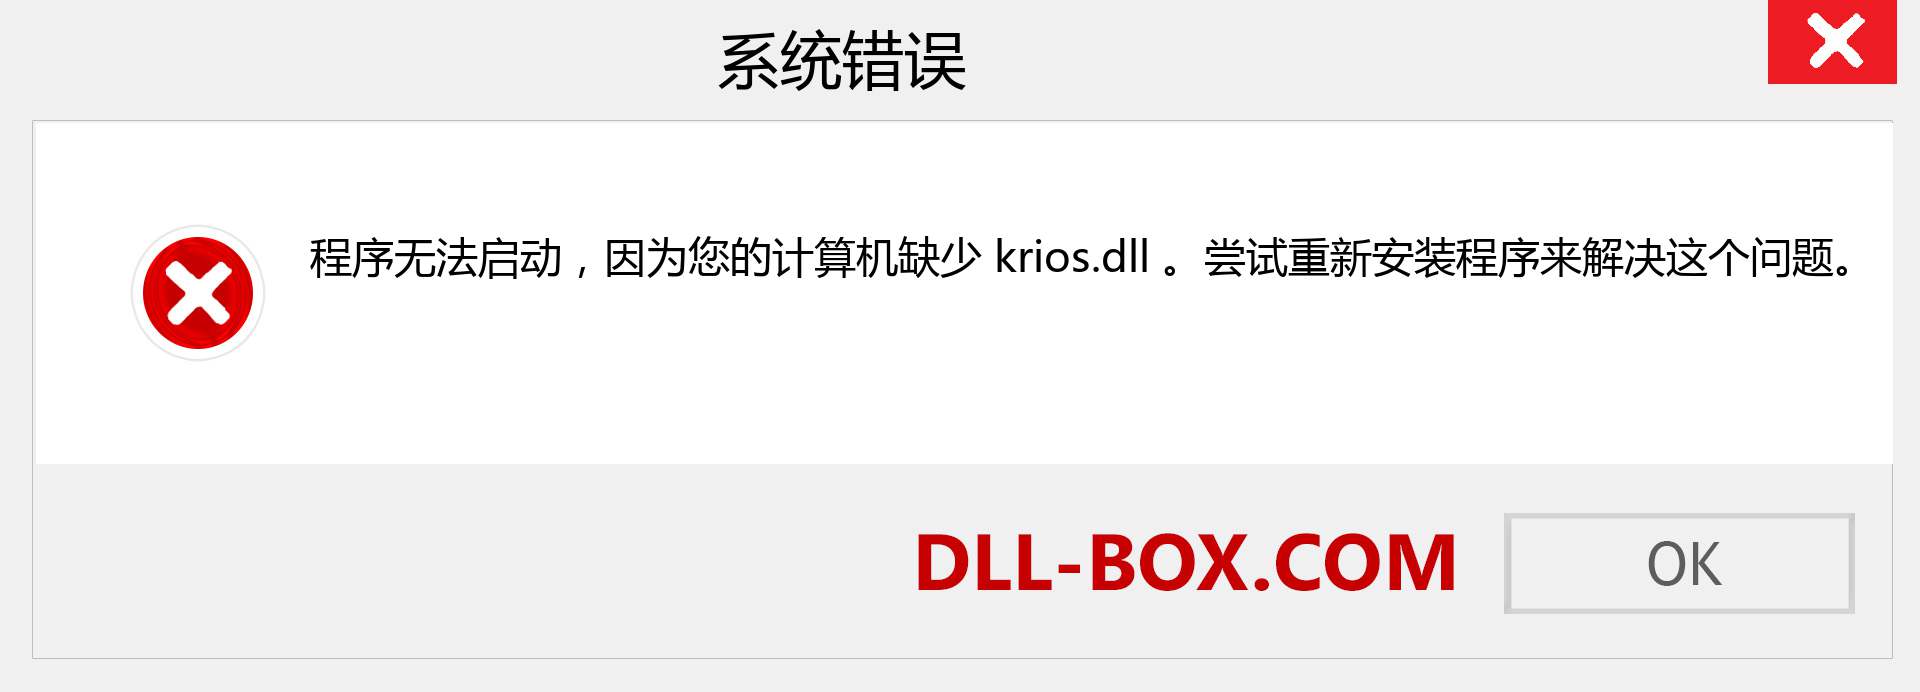 krios.dll 文件丢失？。 适用于 Windows 7、8、10 的下载 - 修复 Windows、照片、图像上的 krios dll 丢失错误